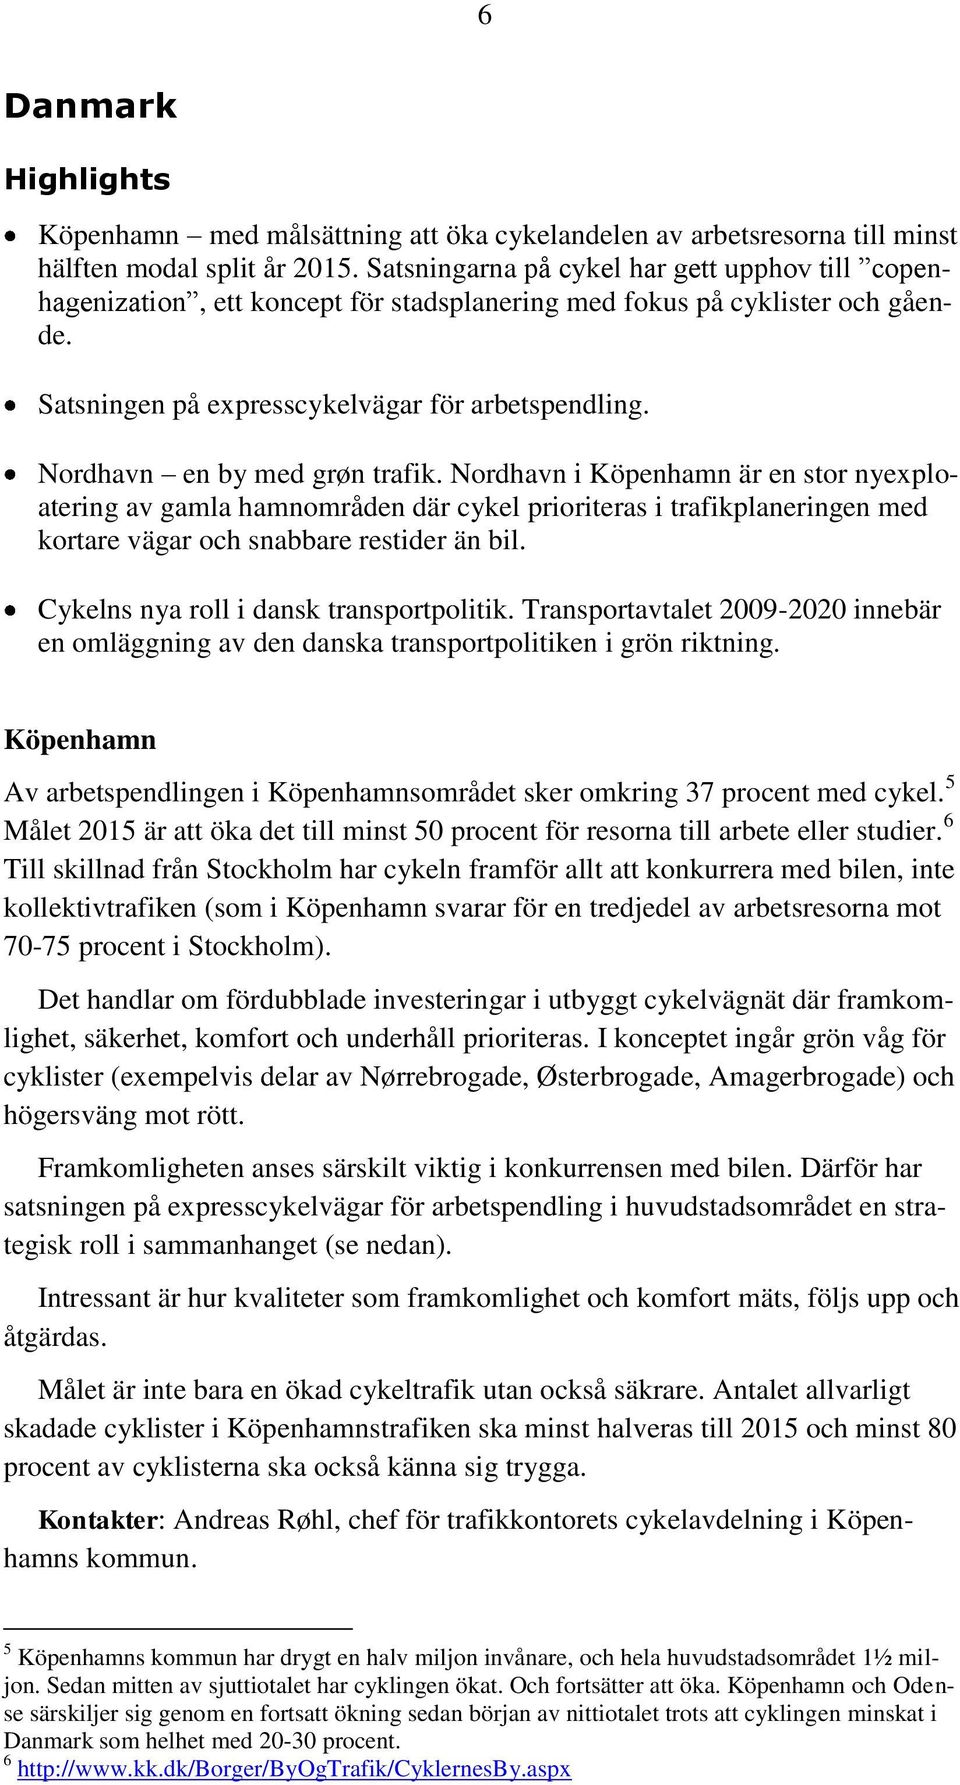 Nordhavn en by med grøn trafik. Nordhavn i Köpenhamn är en stor nyexploatering av gamla hamnområden där cykel prioriteras i trafikplaneringen med kortare vägar och snabbare restider än bil.